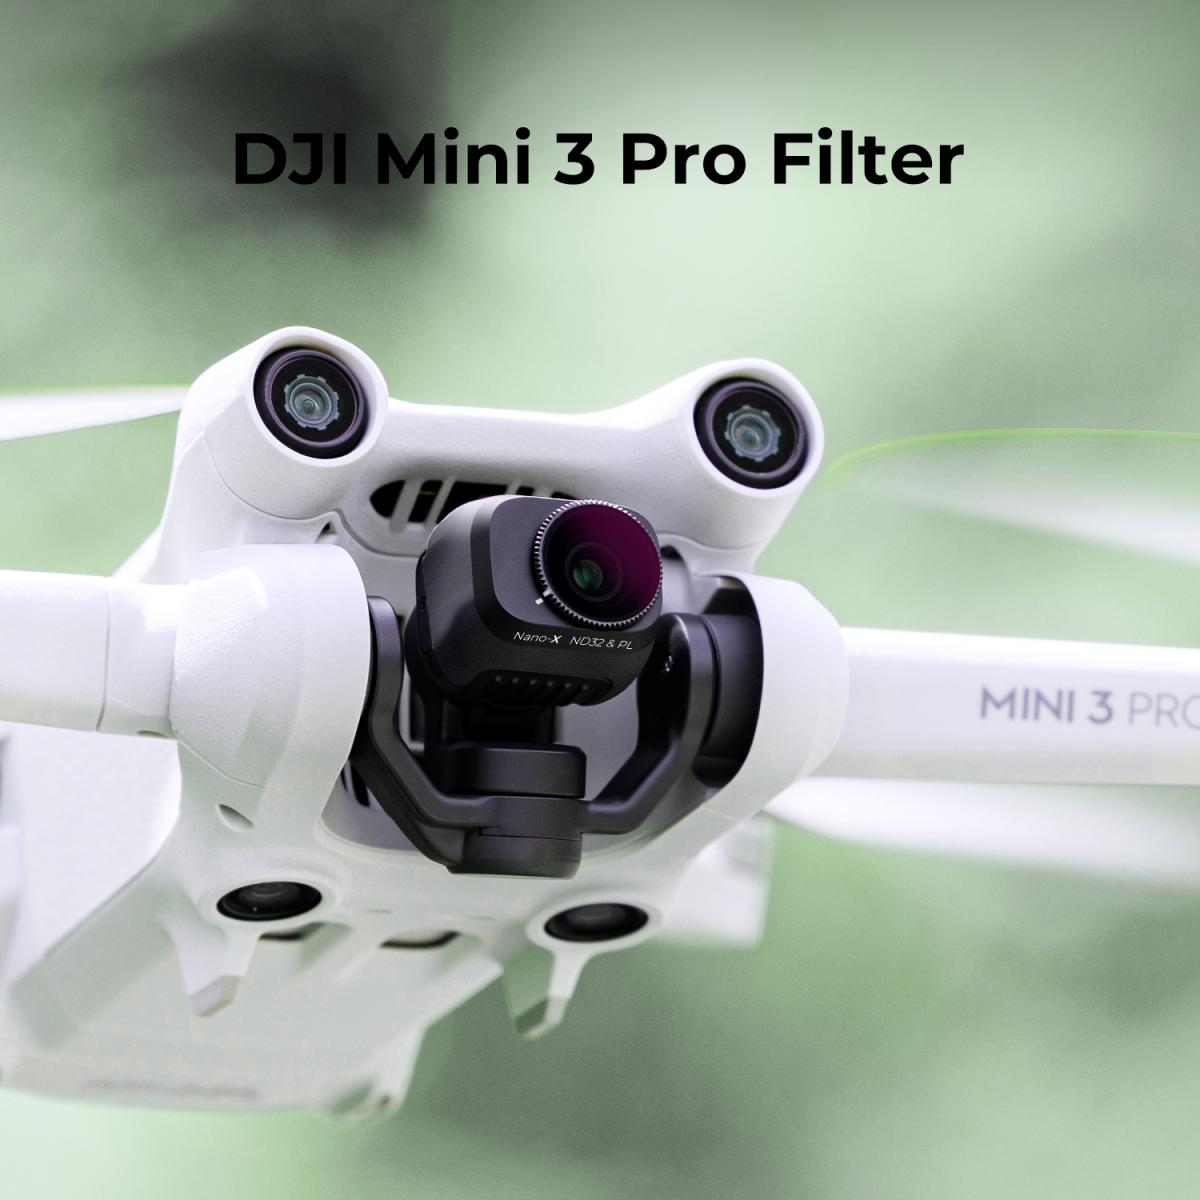 Hecho de Vidrio Optico Multi Saburral y Marco de Aleación de Aluminio Neewer Densidad Neutral ND32/PL Filtro de Lente para DJI Mavic Pro Quadcopter Drone Oro 